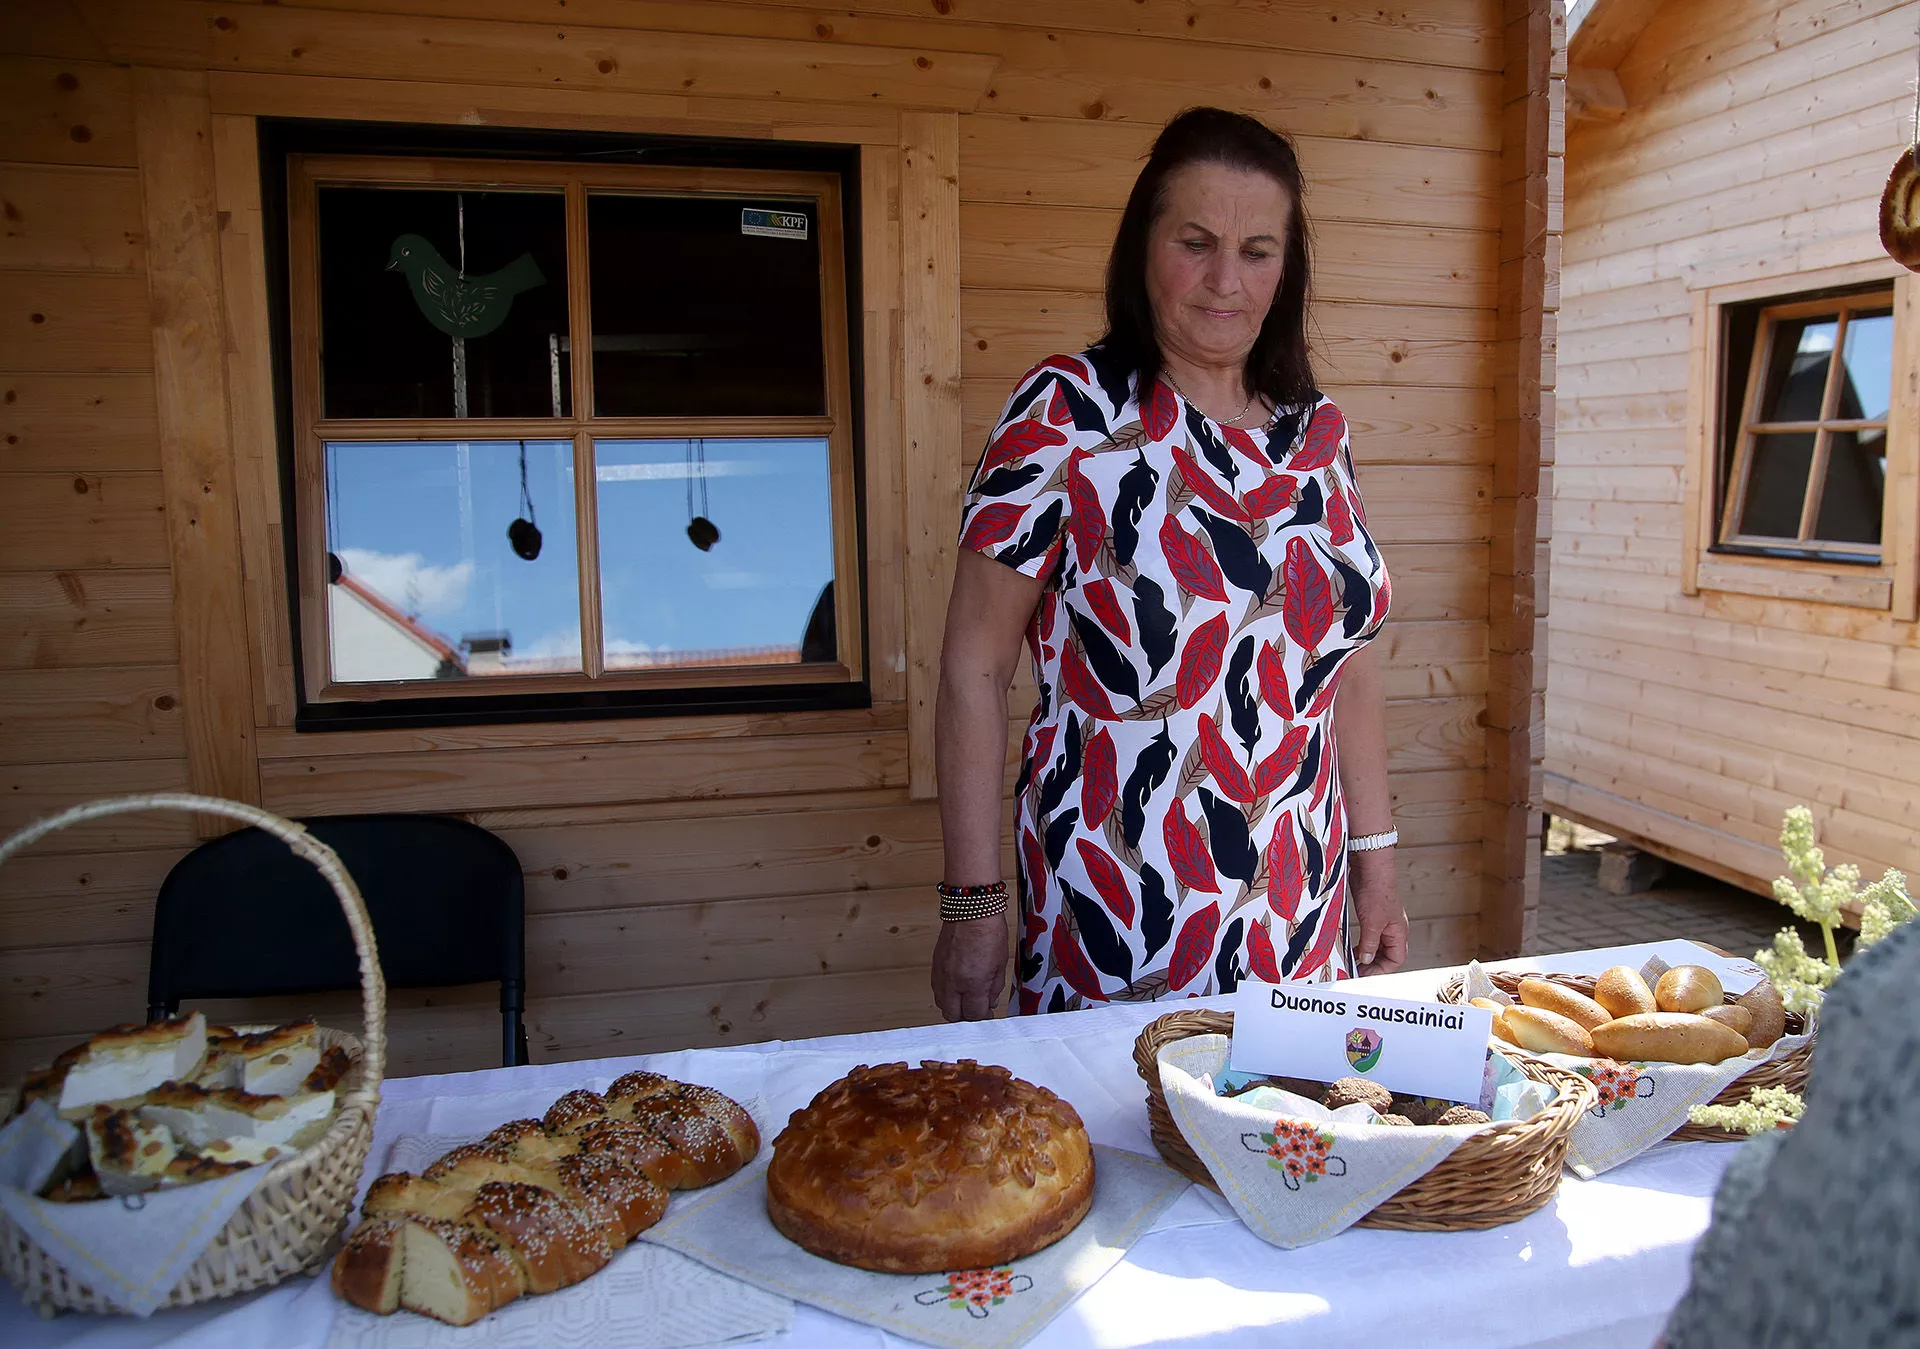 Labūnavoje daugiau nei 45 metus gyvenanti Vanda Jablonskienė vaišino miestelėnus mielinės tešlos pyragu, bandelėmis ir duonos sausainiais. A. Barzdžiaus nuotr.